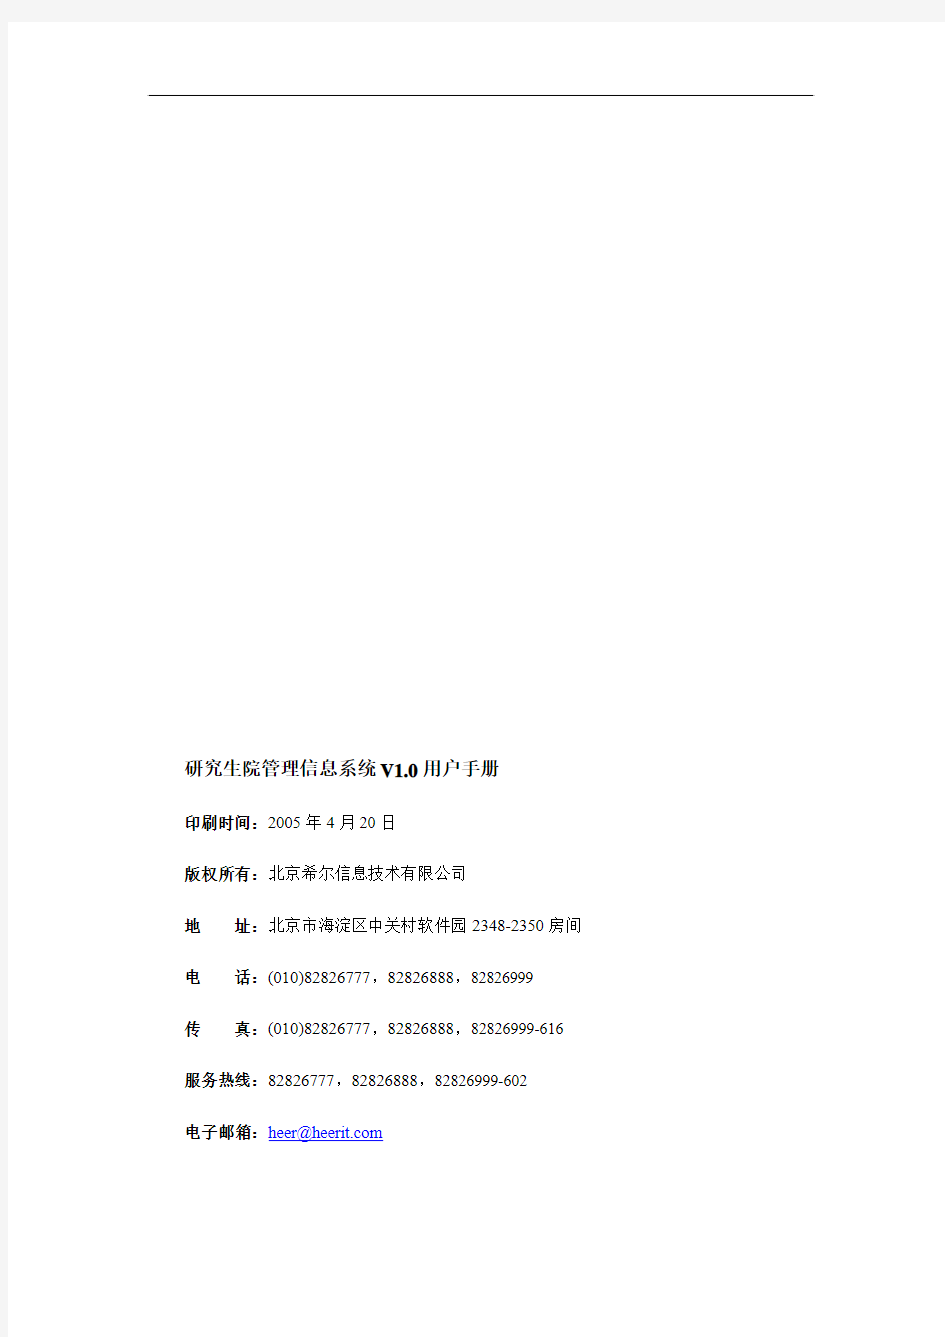 中山大学研究生管理系统-培养管理用户手册(学生)